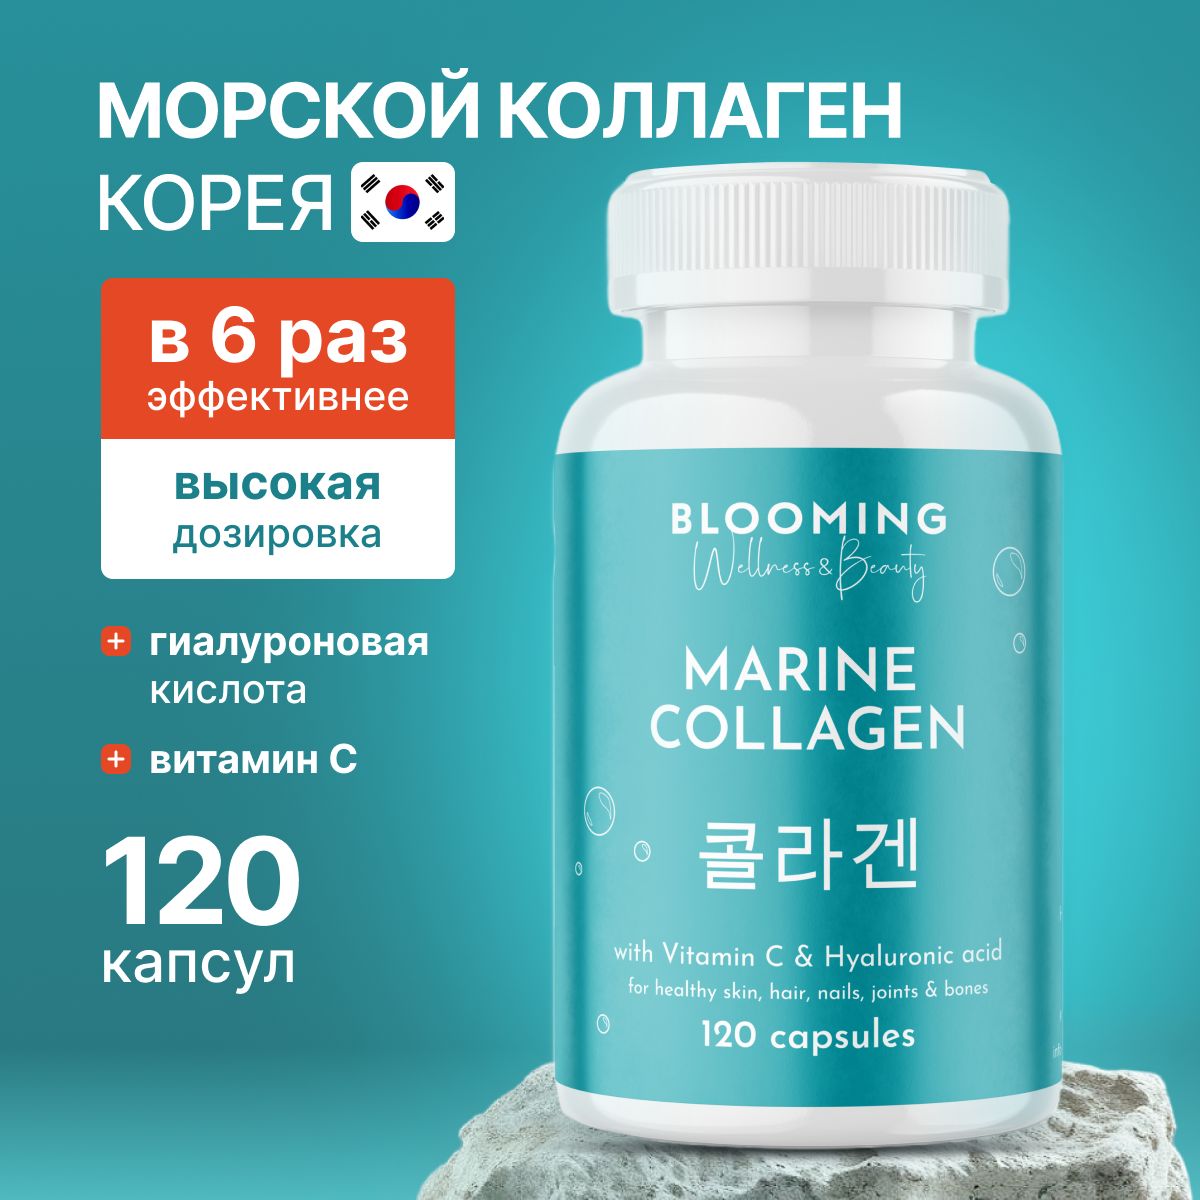 КоллагенморскойкапсулыBloomingW&BсвитаминомСигиалуроновойкислотой,ПептидныйморскойколлагенКореядлякожииволос,суставовисвязок,120капсул,30порций